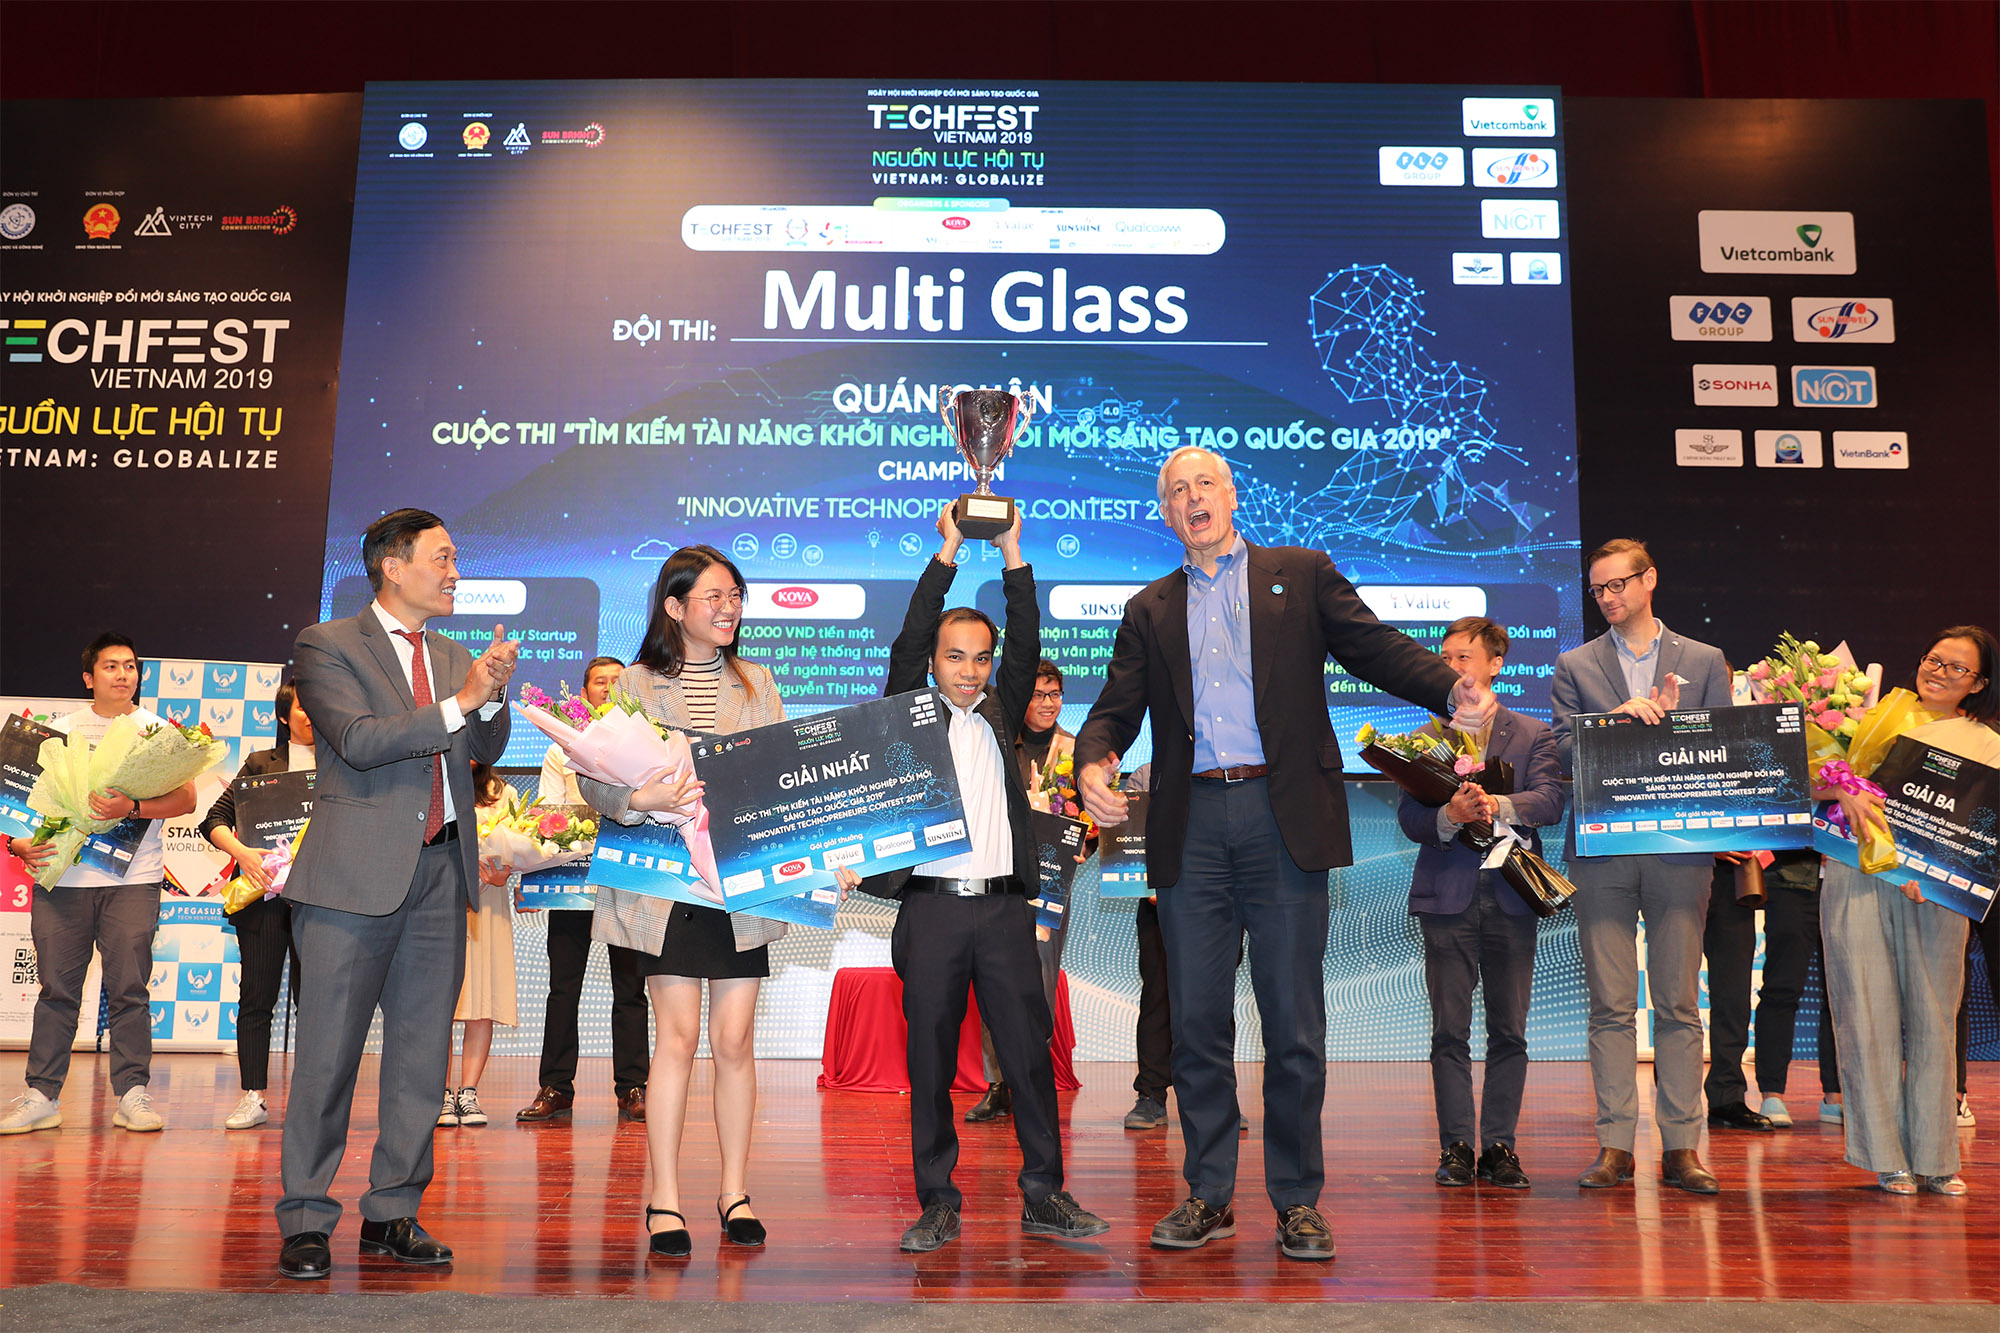 Đội Multi Glass được ban tổ chức trao giải Nhất cuộc thi chung kết tài năng khởi nghiệp sáng tạo quốc gia 2019. Ảnh: BTC.